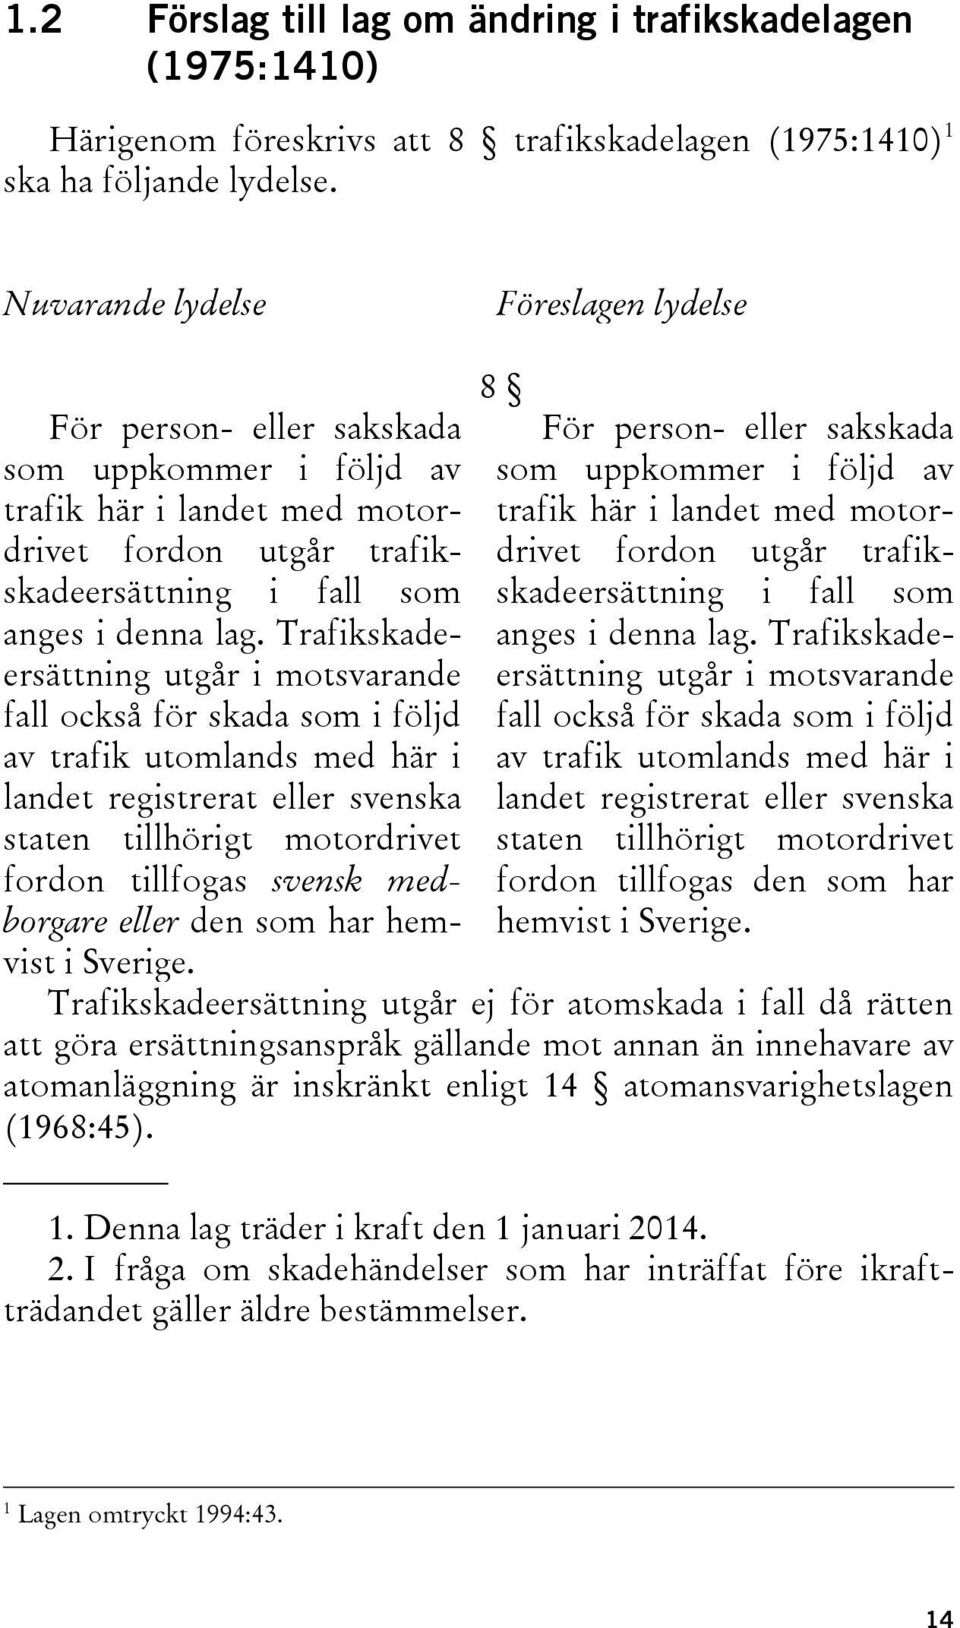 Trafikskadeersättning utgår i motsvarande fall också för skada som i följd av trafik utomlands med här i landet registrerat eller svenska staten tillhörigt motordrivet fordon tillfogas svensk